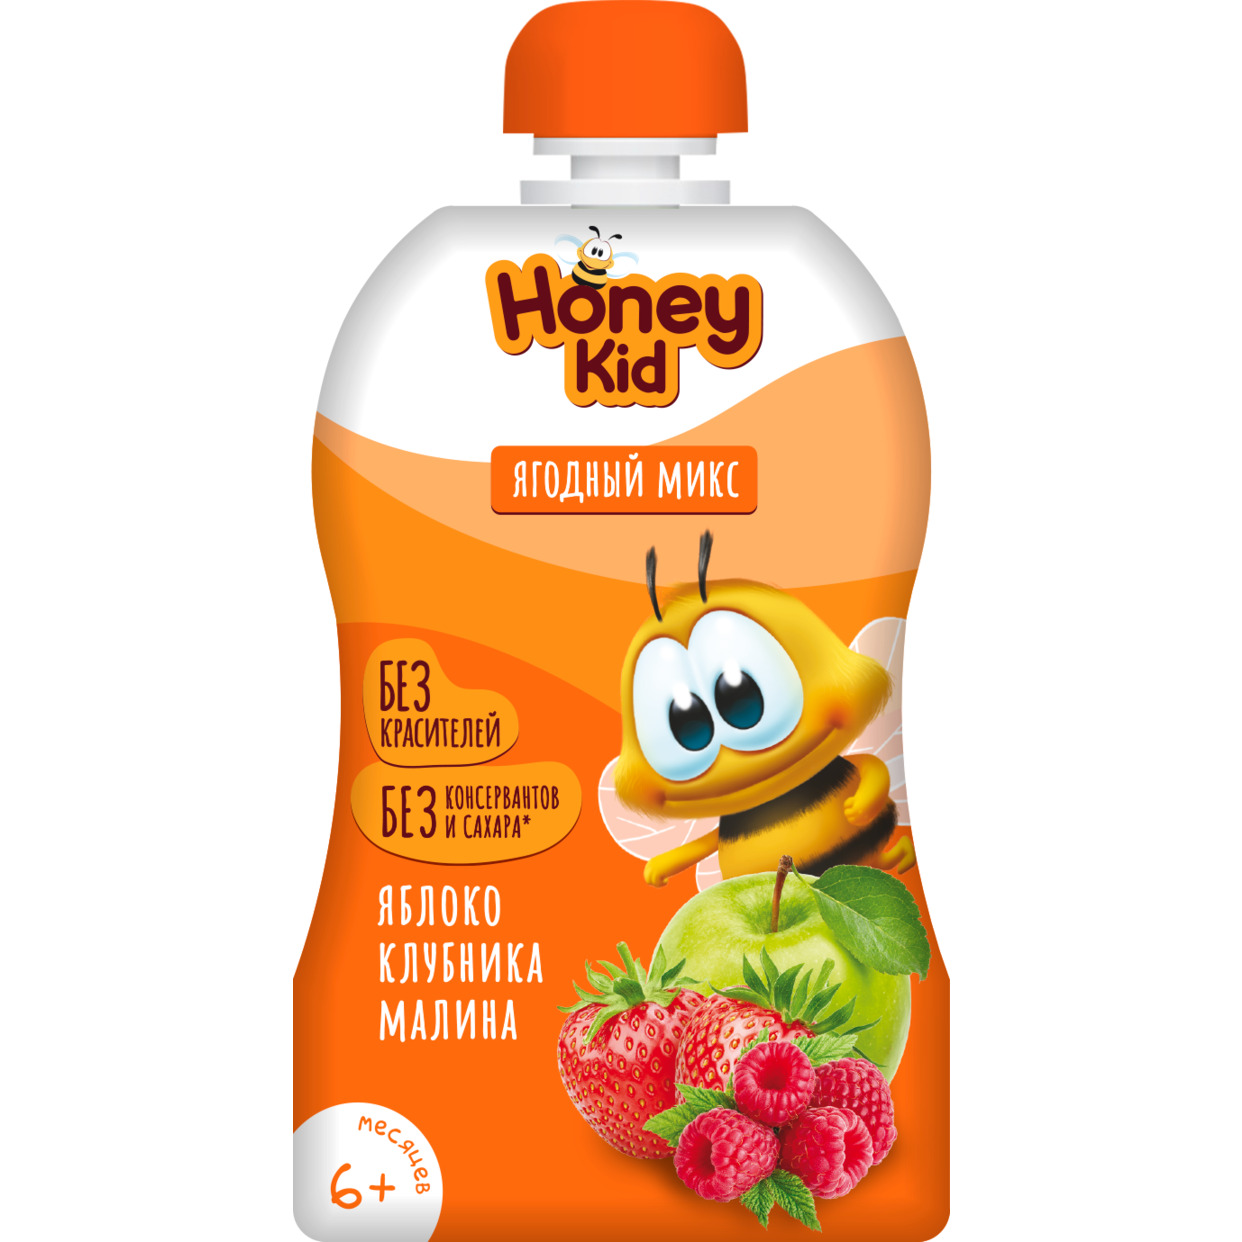 Пюре "Honey Kid" из яблок, малины и клубники для детского питания для детей раннего возраста гомогенизированное, стерилизованное с 6 месяцев 90г по акции в Пятерочке